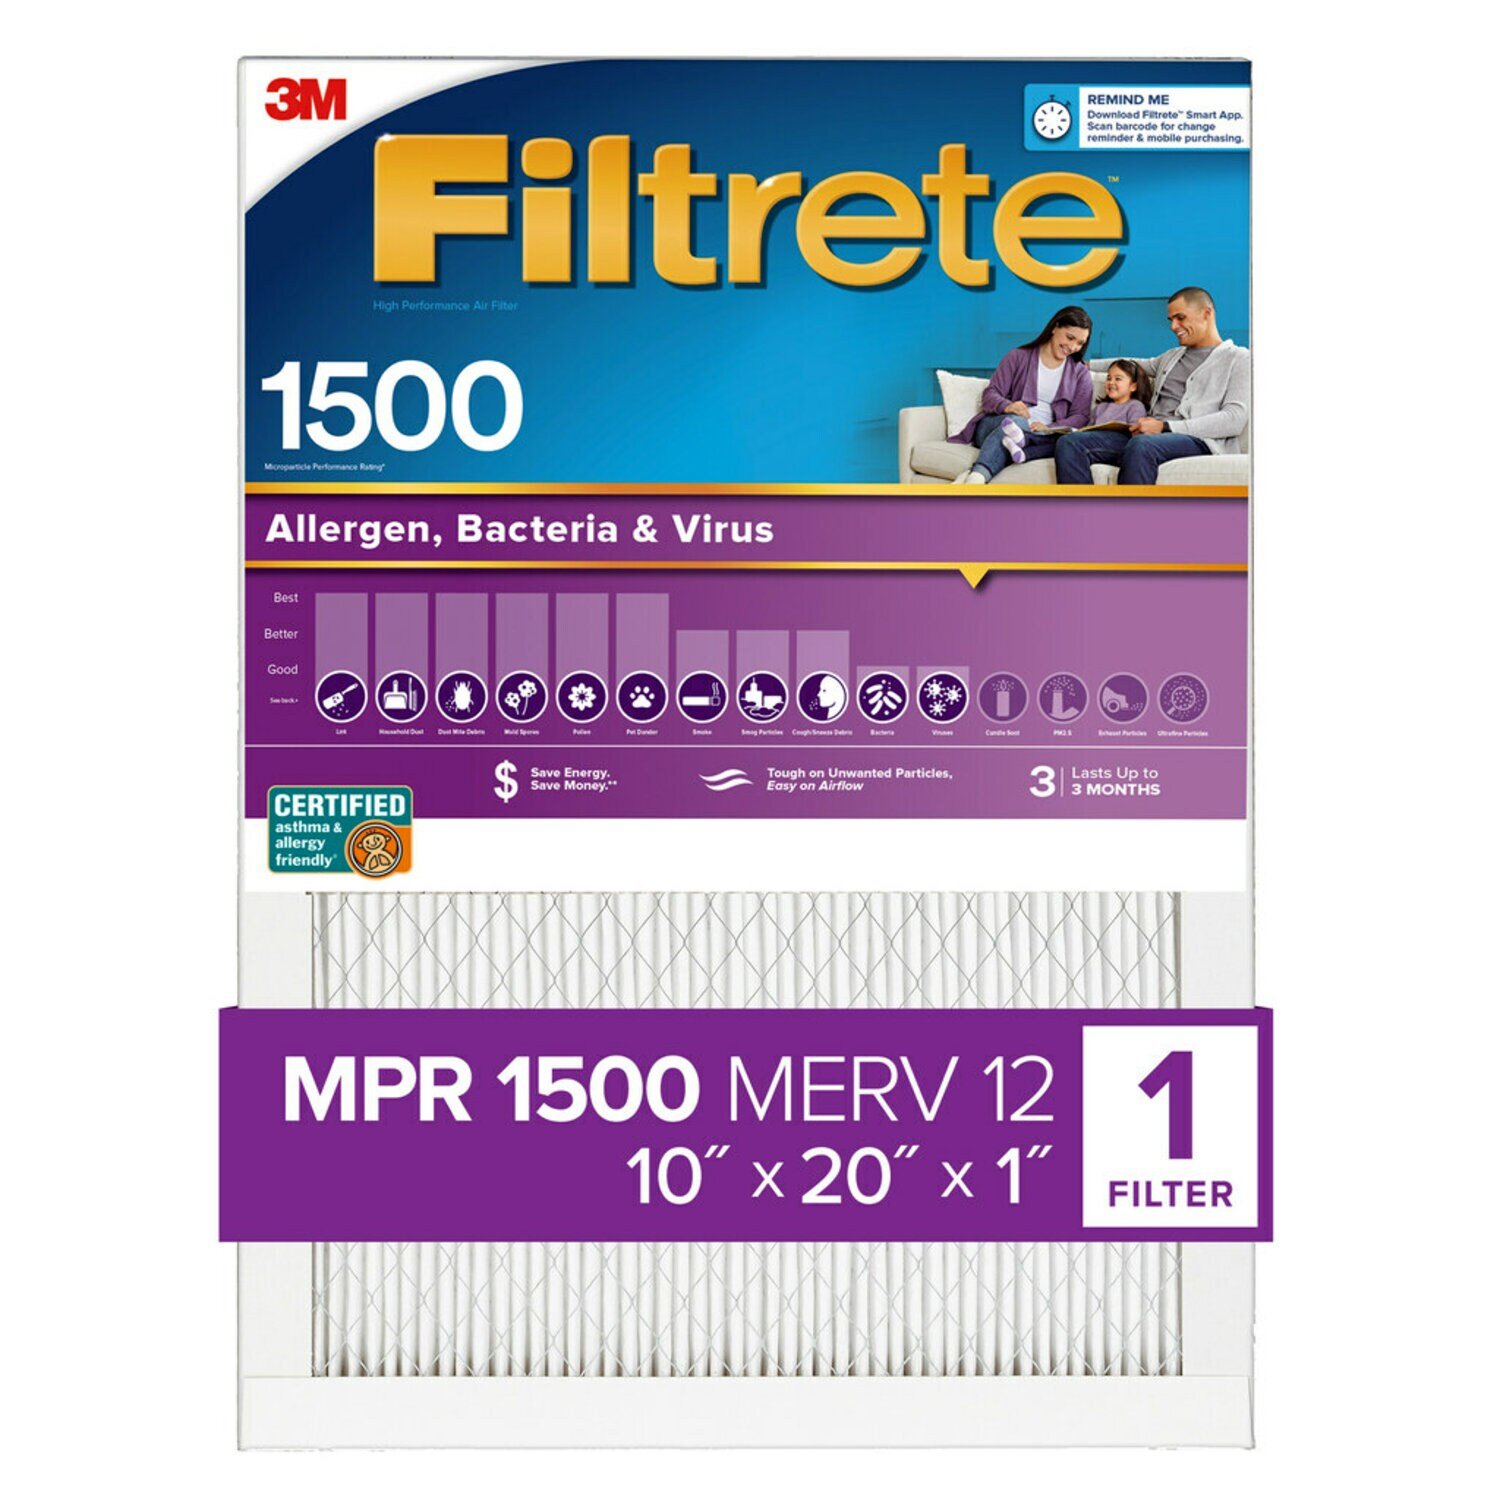 7100264581 - Filtrete High Performance Air Filter 1500 MPR 2007DC-4, 10 in x 20 in x 1 in (25.4 cm x 50.8 cm x 2.5 cm)